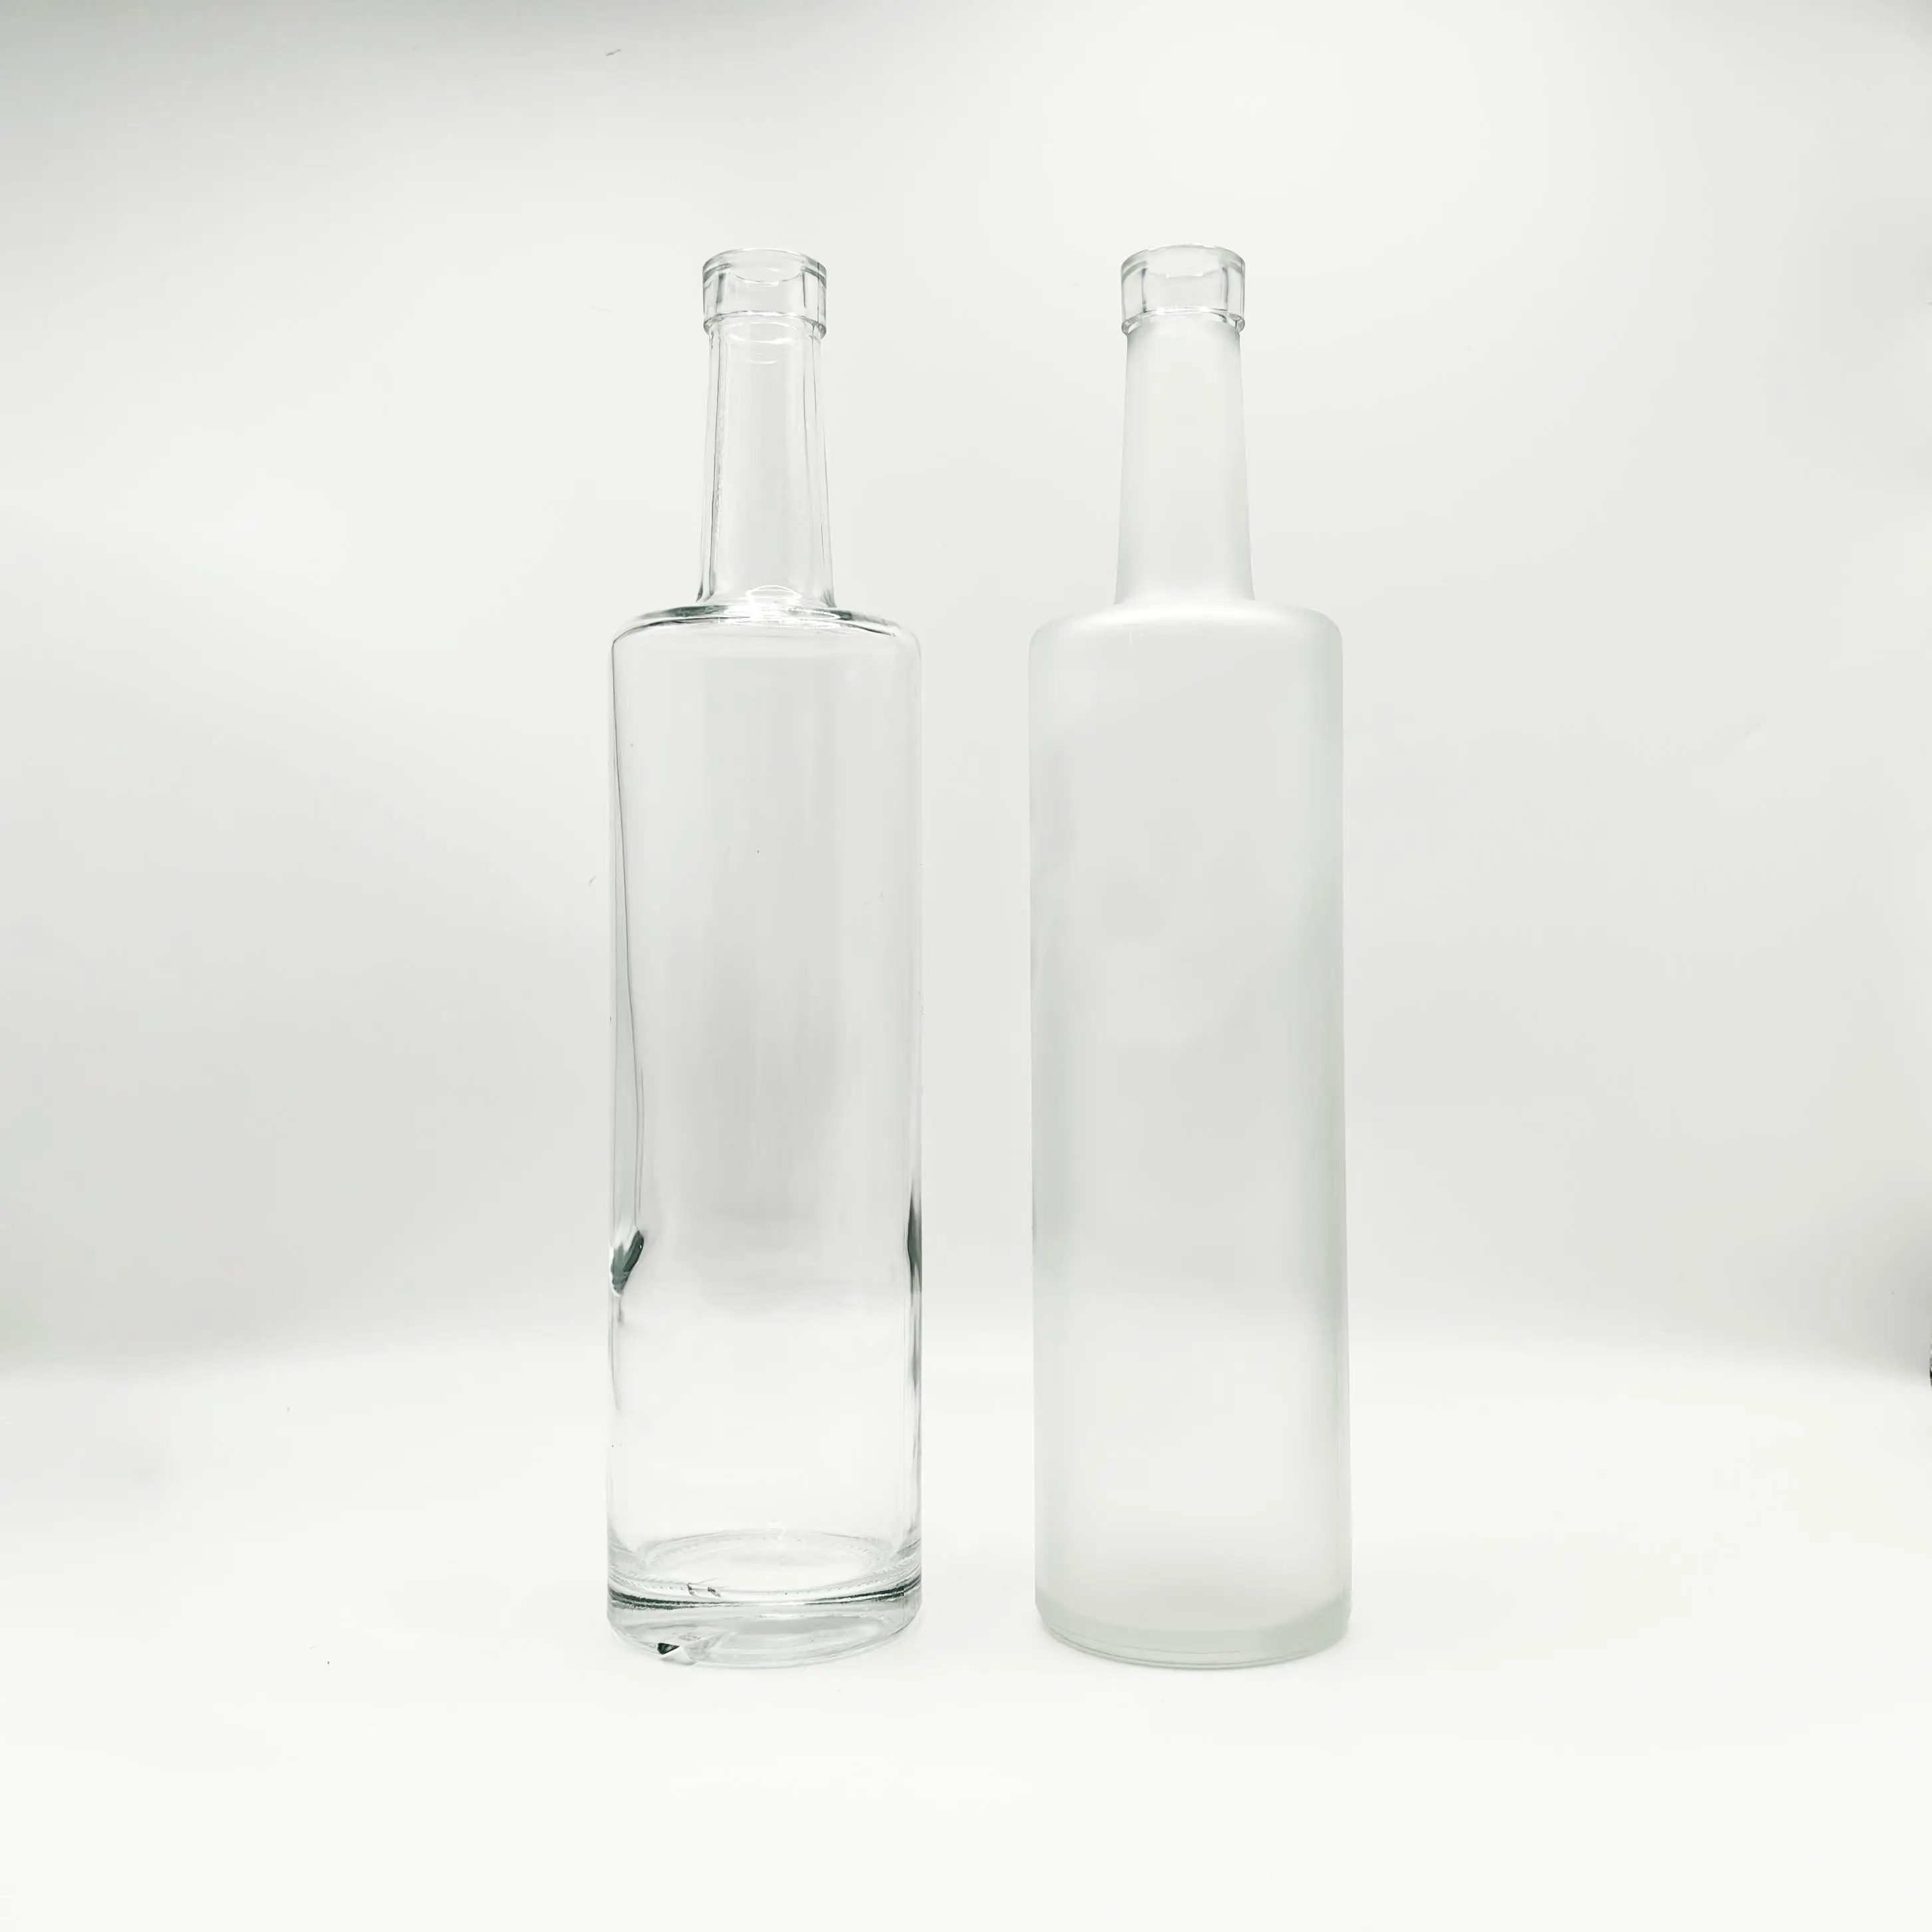 Hersteller 700 ml 750 ml glasflasche für mattierte wodka mit korkstopfen, whiskey, tequila, gin, rum, trauben weinflasche